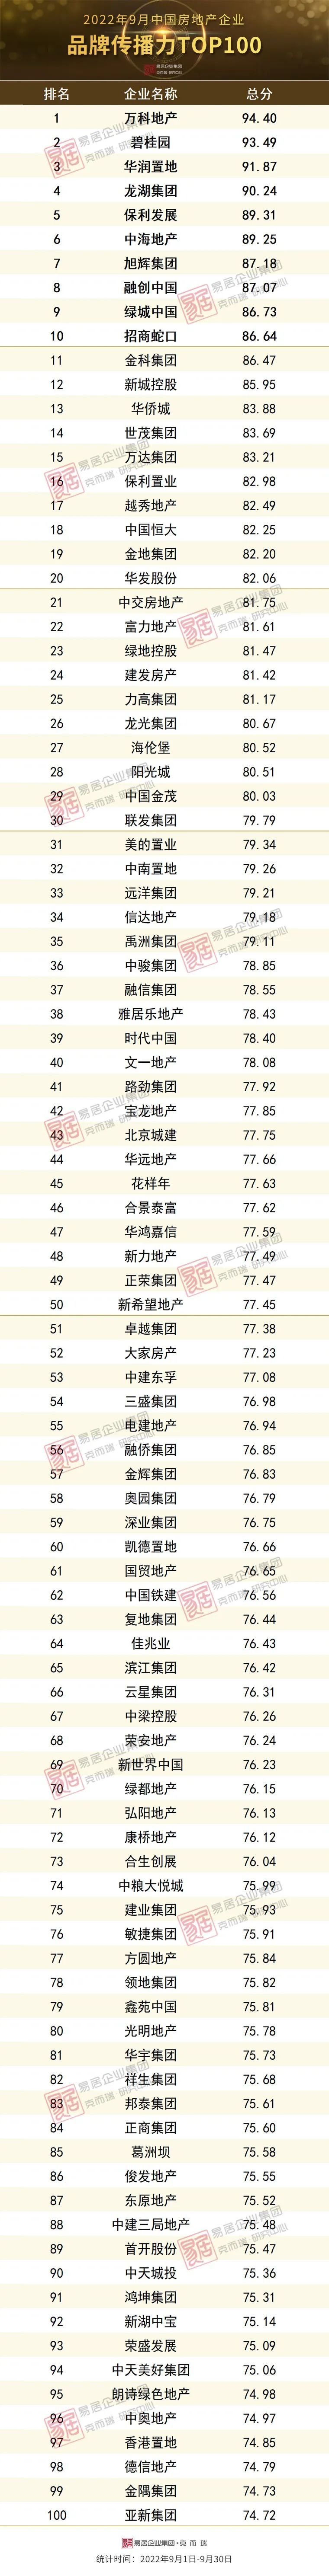 2022年9月中国房地产企业品牌传播力TOP100排行榜